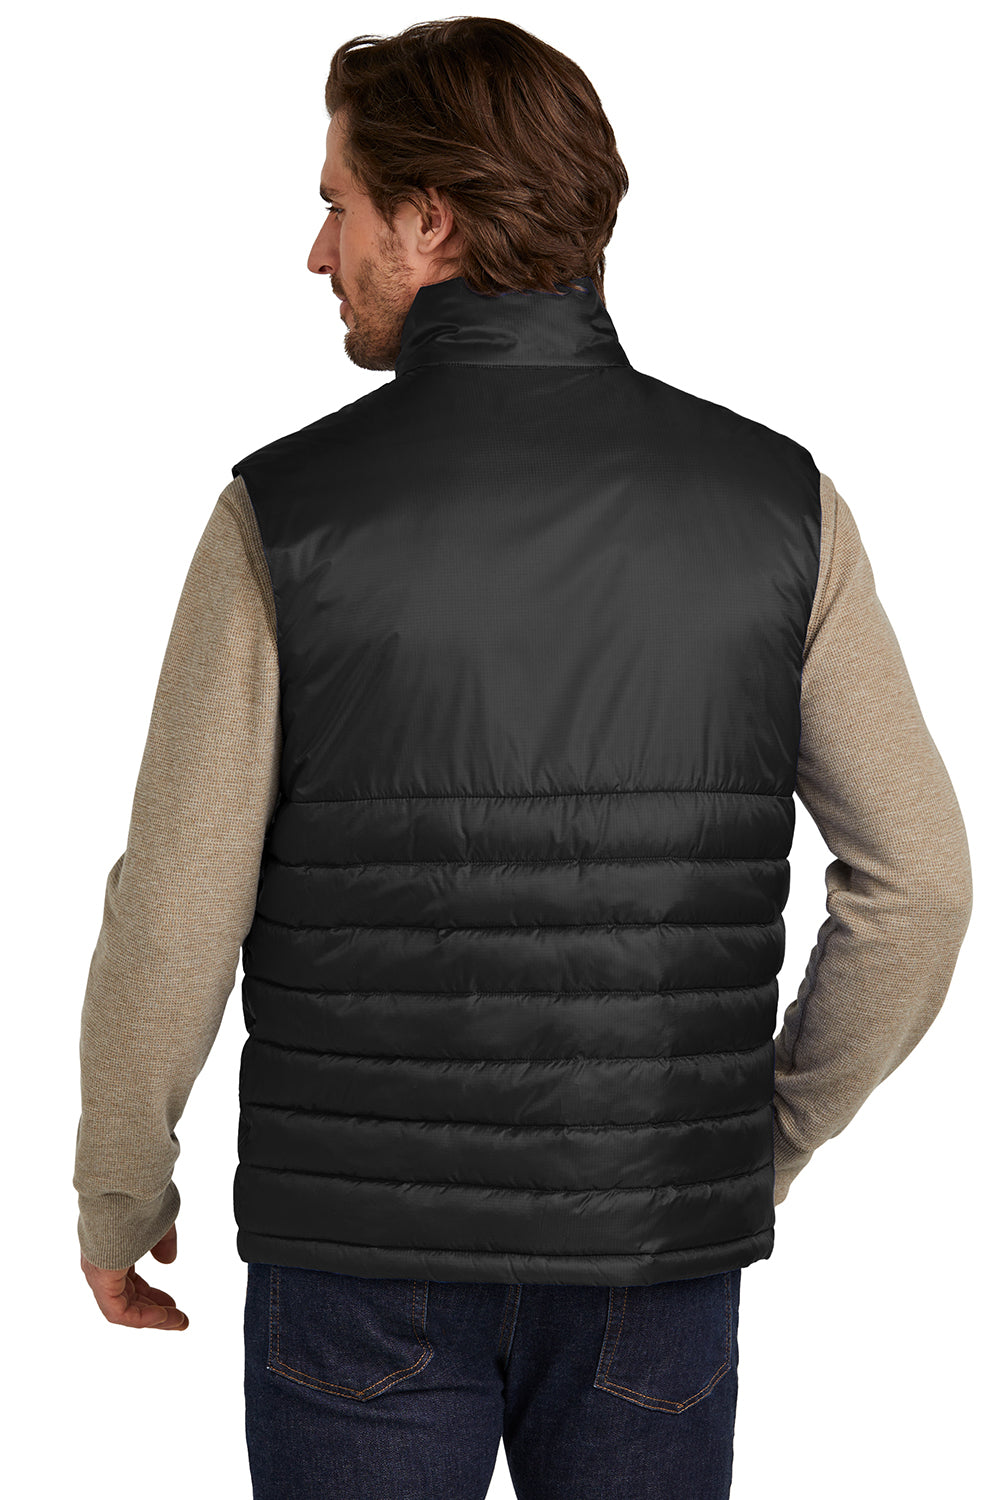 Eddie Bauer EB512 Mens Water Resistant Quilted Full Zip Vest Deep Black Model Back